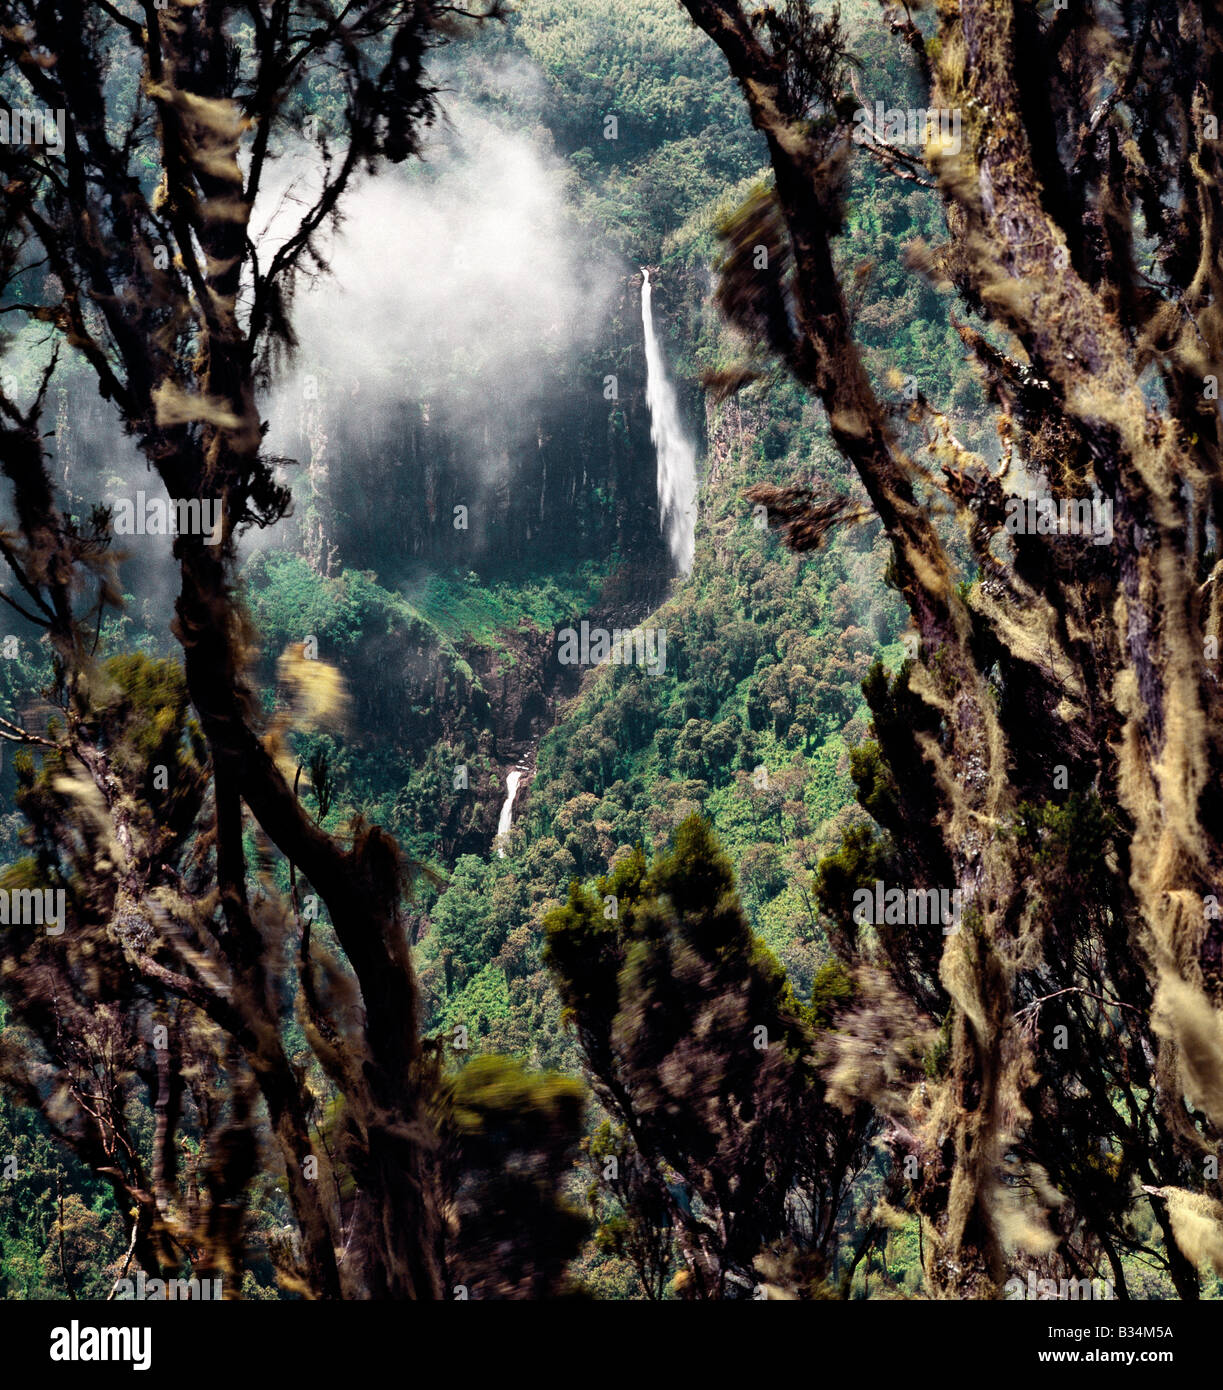 Kenia, zentralen Hochland Aberdare Berge. Gerahmt mit Flechten bewachsenen riesige Heidekraut, sinkt die beeindruckende Gura-Wasserfälle dramatisch aus Bambuswald unterhalb der Moorlandschaften der Aberdare Berge. Stockfoto